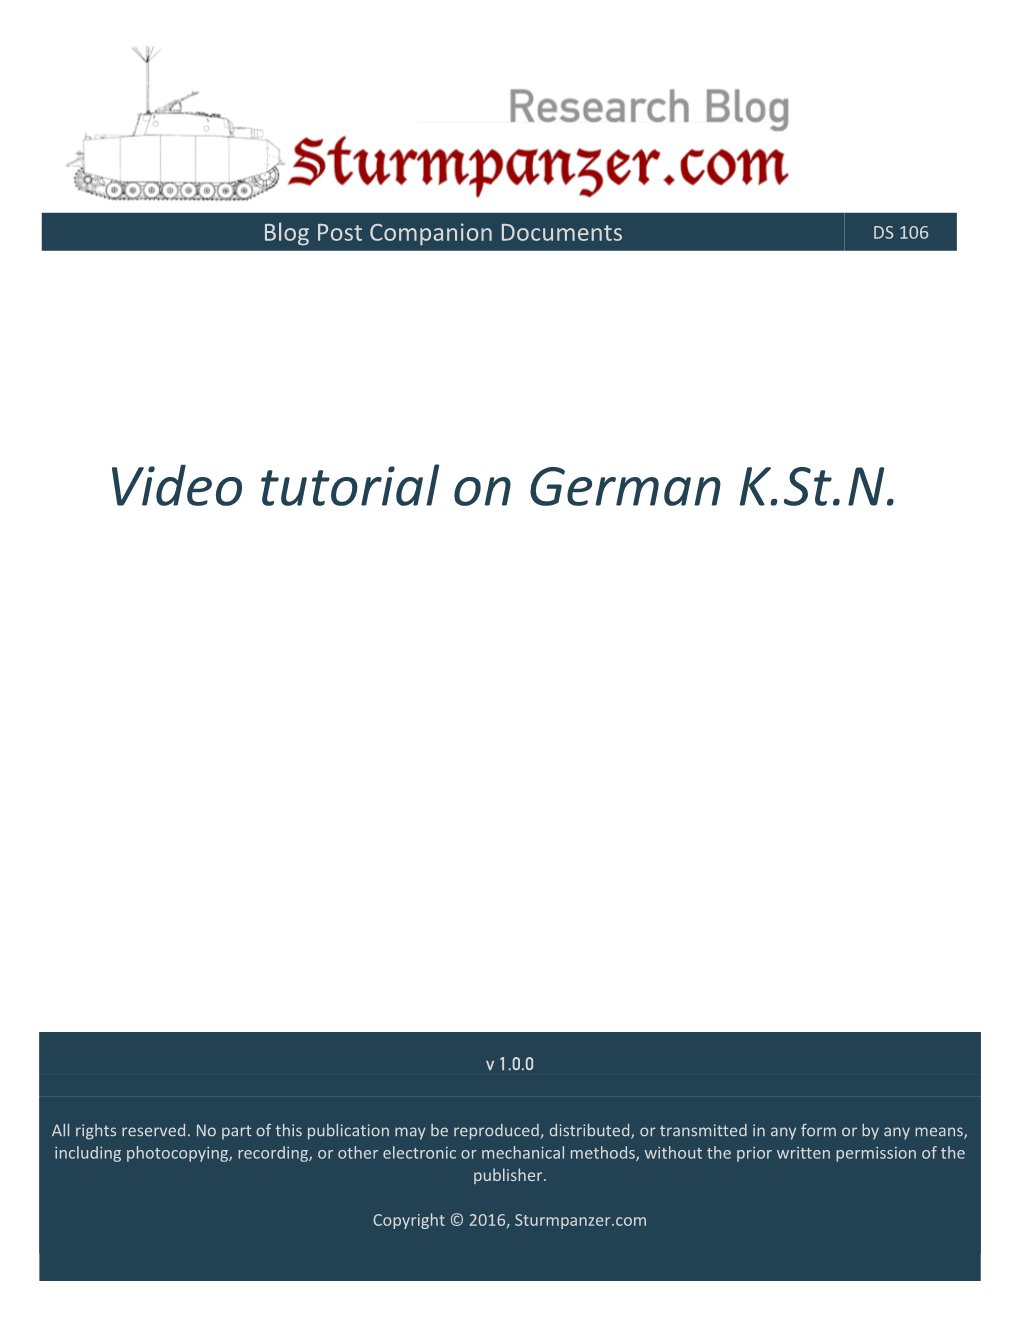 Video Tutorial on German K.St.N